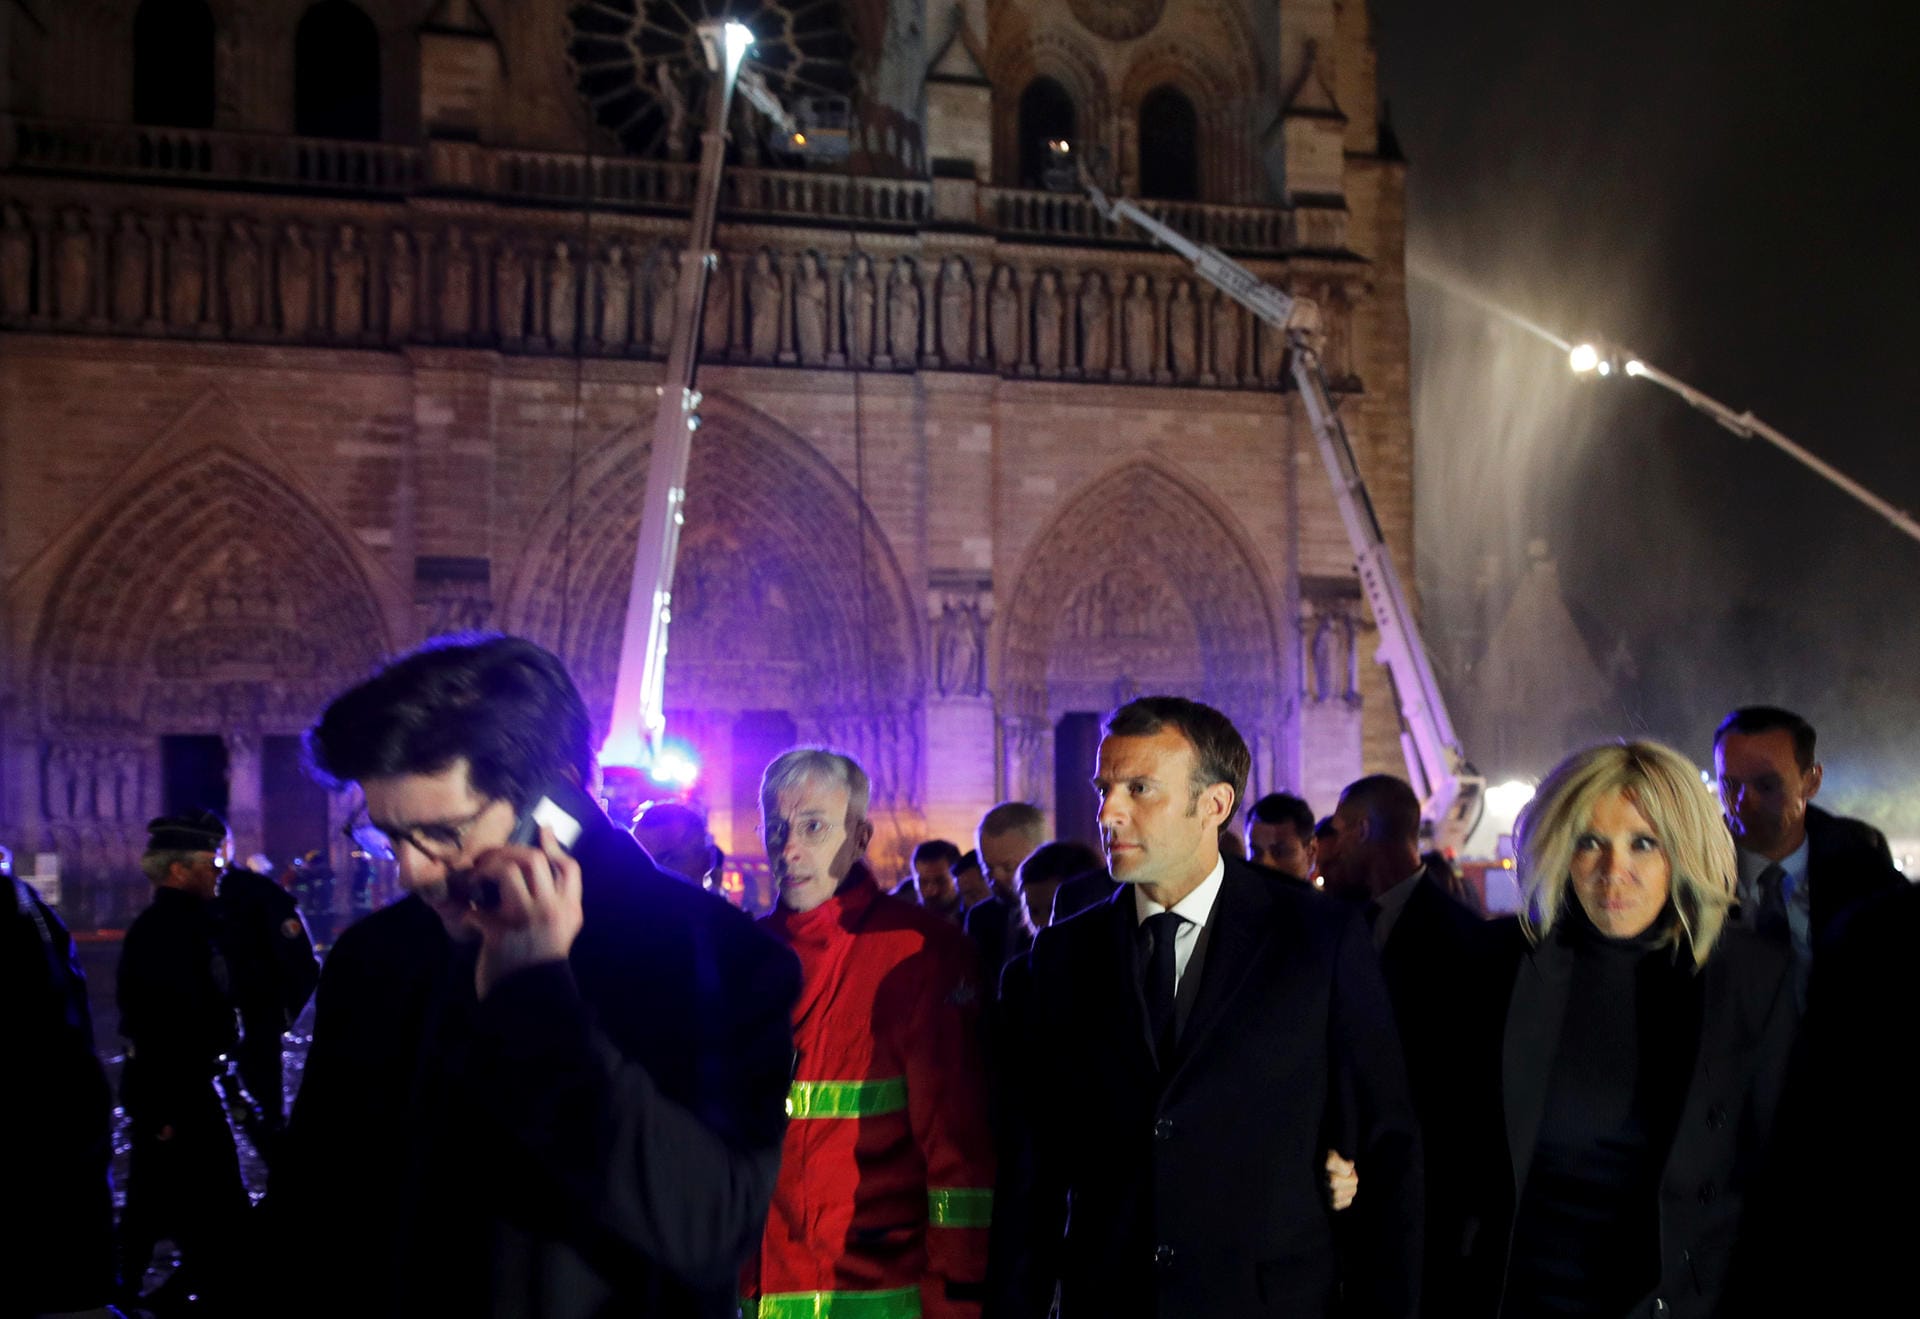 Frankreichs Präsident Emmanuel Macron hat bereits angekündigt, die Kirche in jedem Fall wieder aufbauen zu lassen. Das erwarte das Land, das verdiene es auch, sagte er.